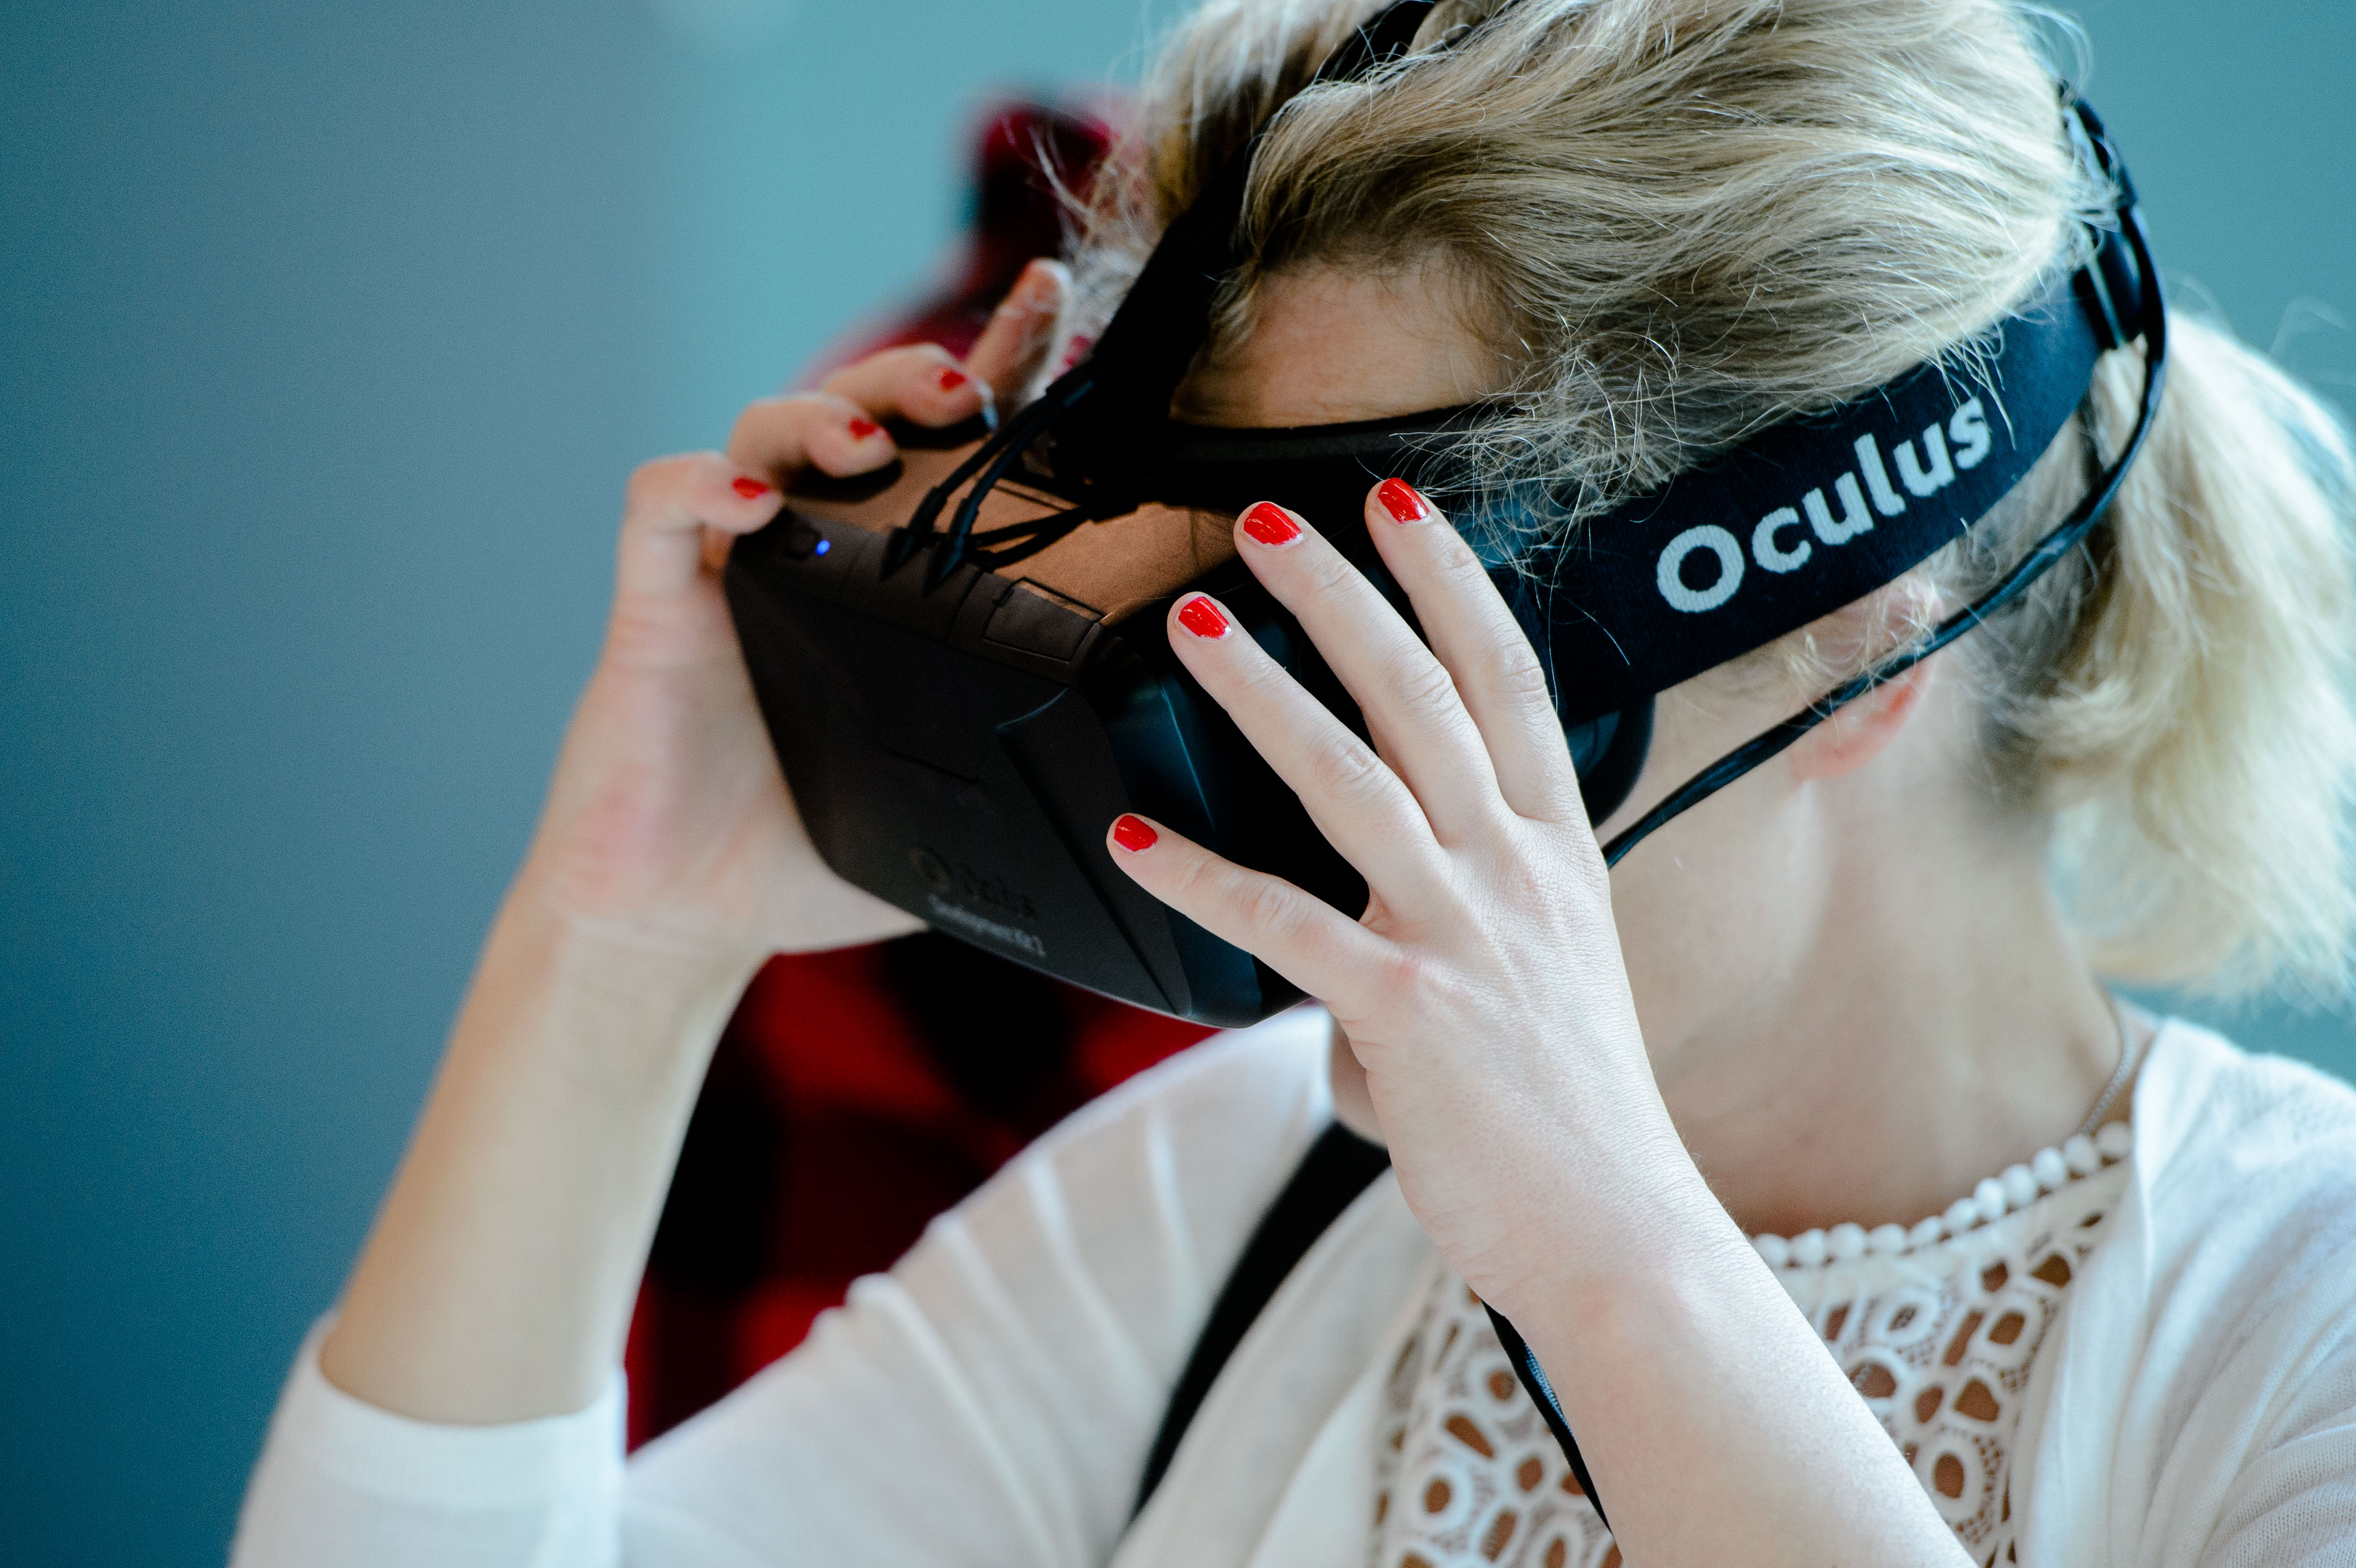 La réalité virtuelle peut avoir des conséquences sur le cerveaux, encore méconnues. Photo : Heinrich-Böll-Stiftung.